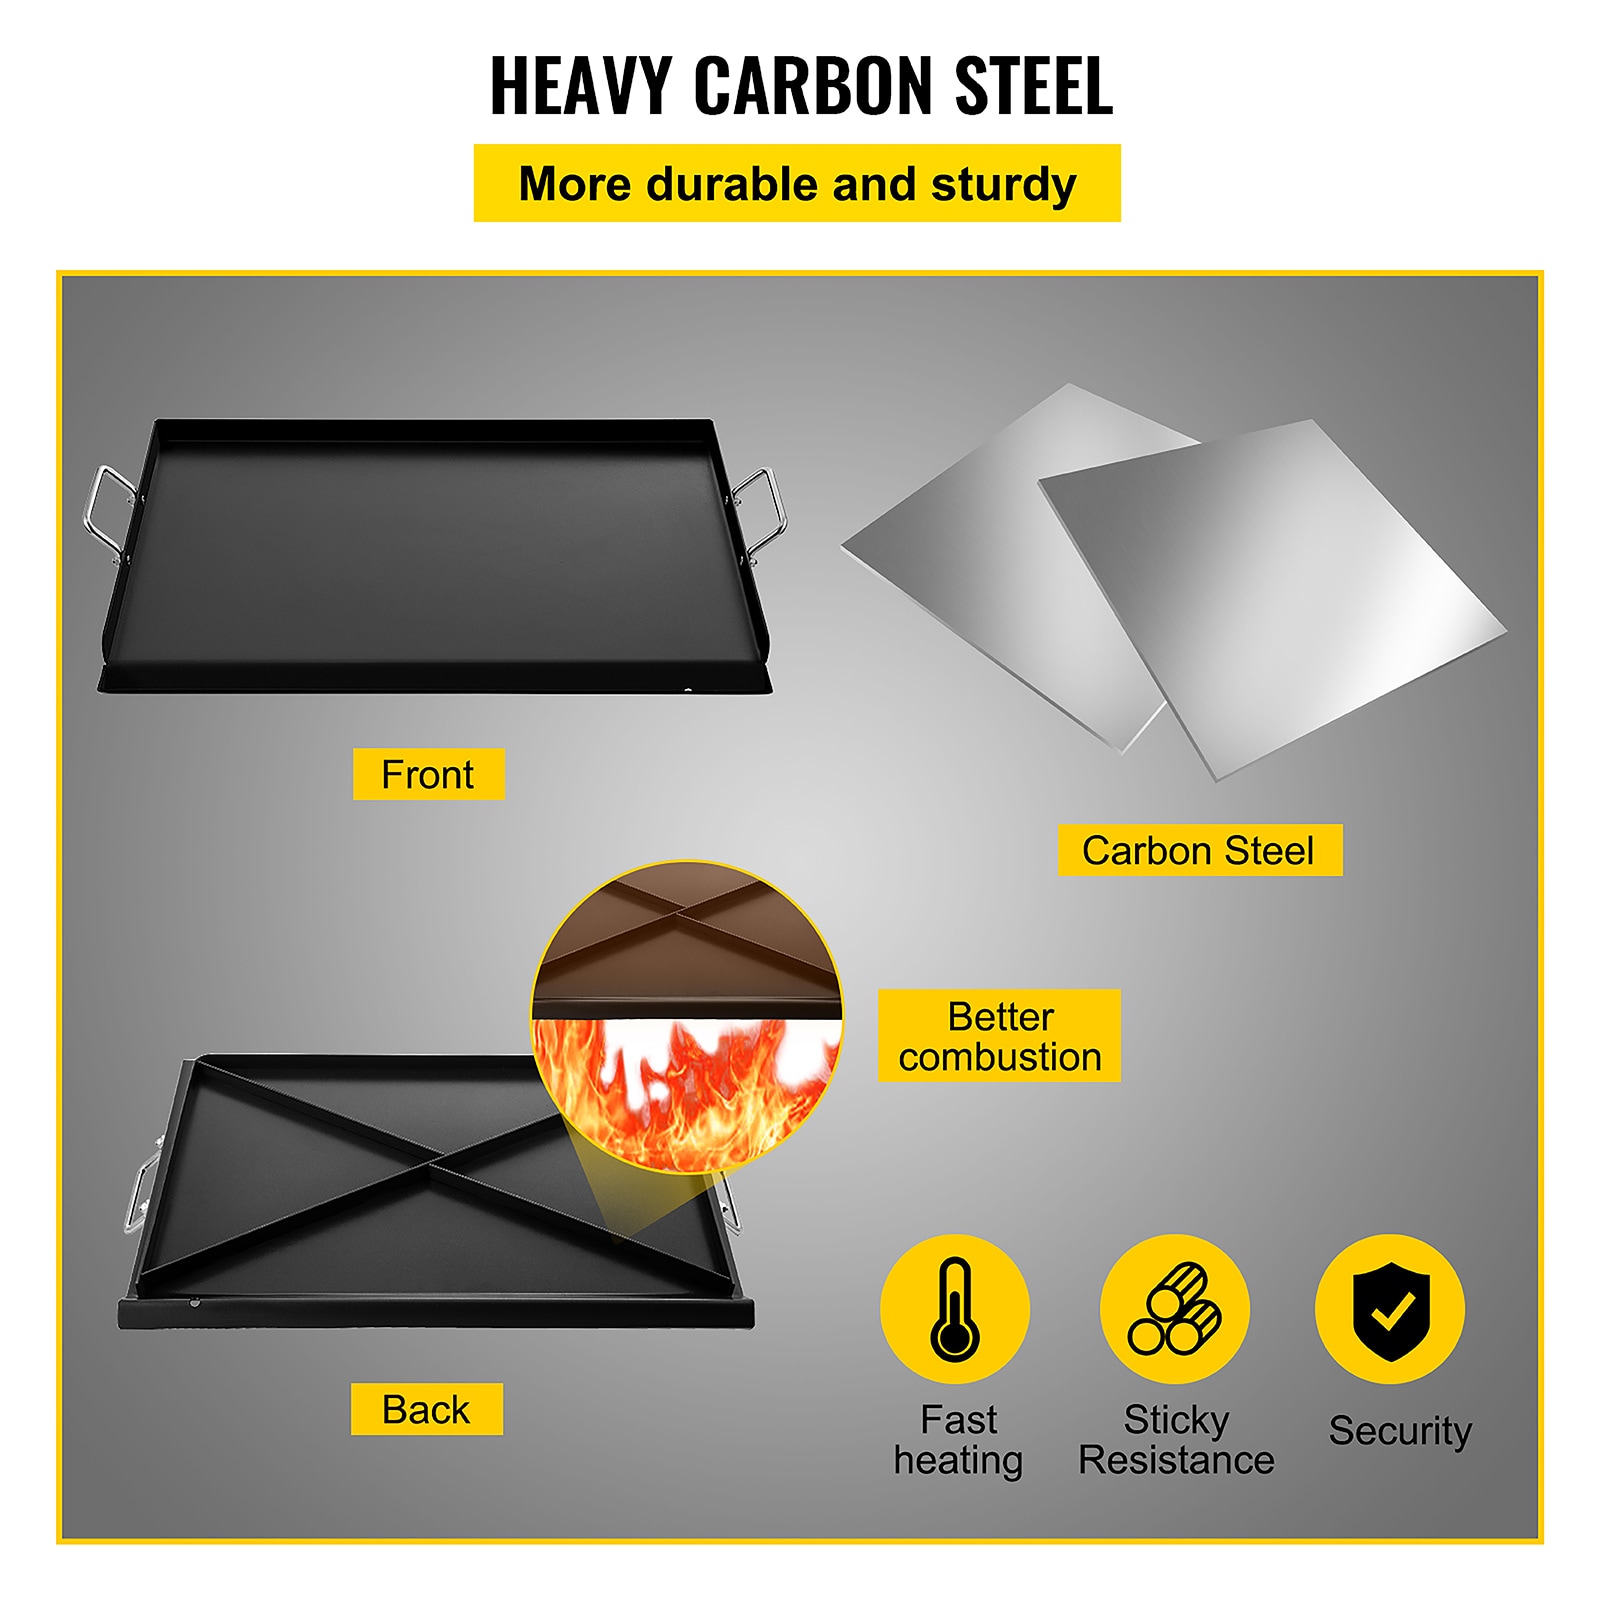 VEVOR 16 x 37-in Stove Top Griddle Carbon Steel Non-Stick Griddle | RQSKLYPD16X37UQL1V0